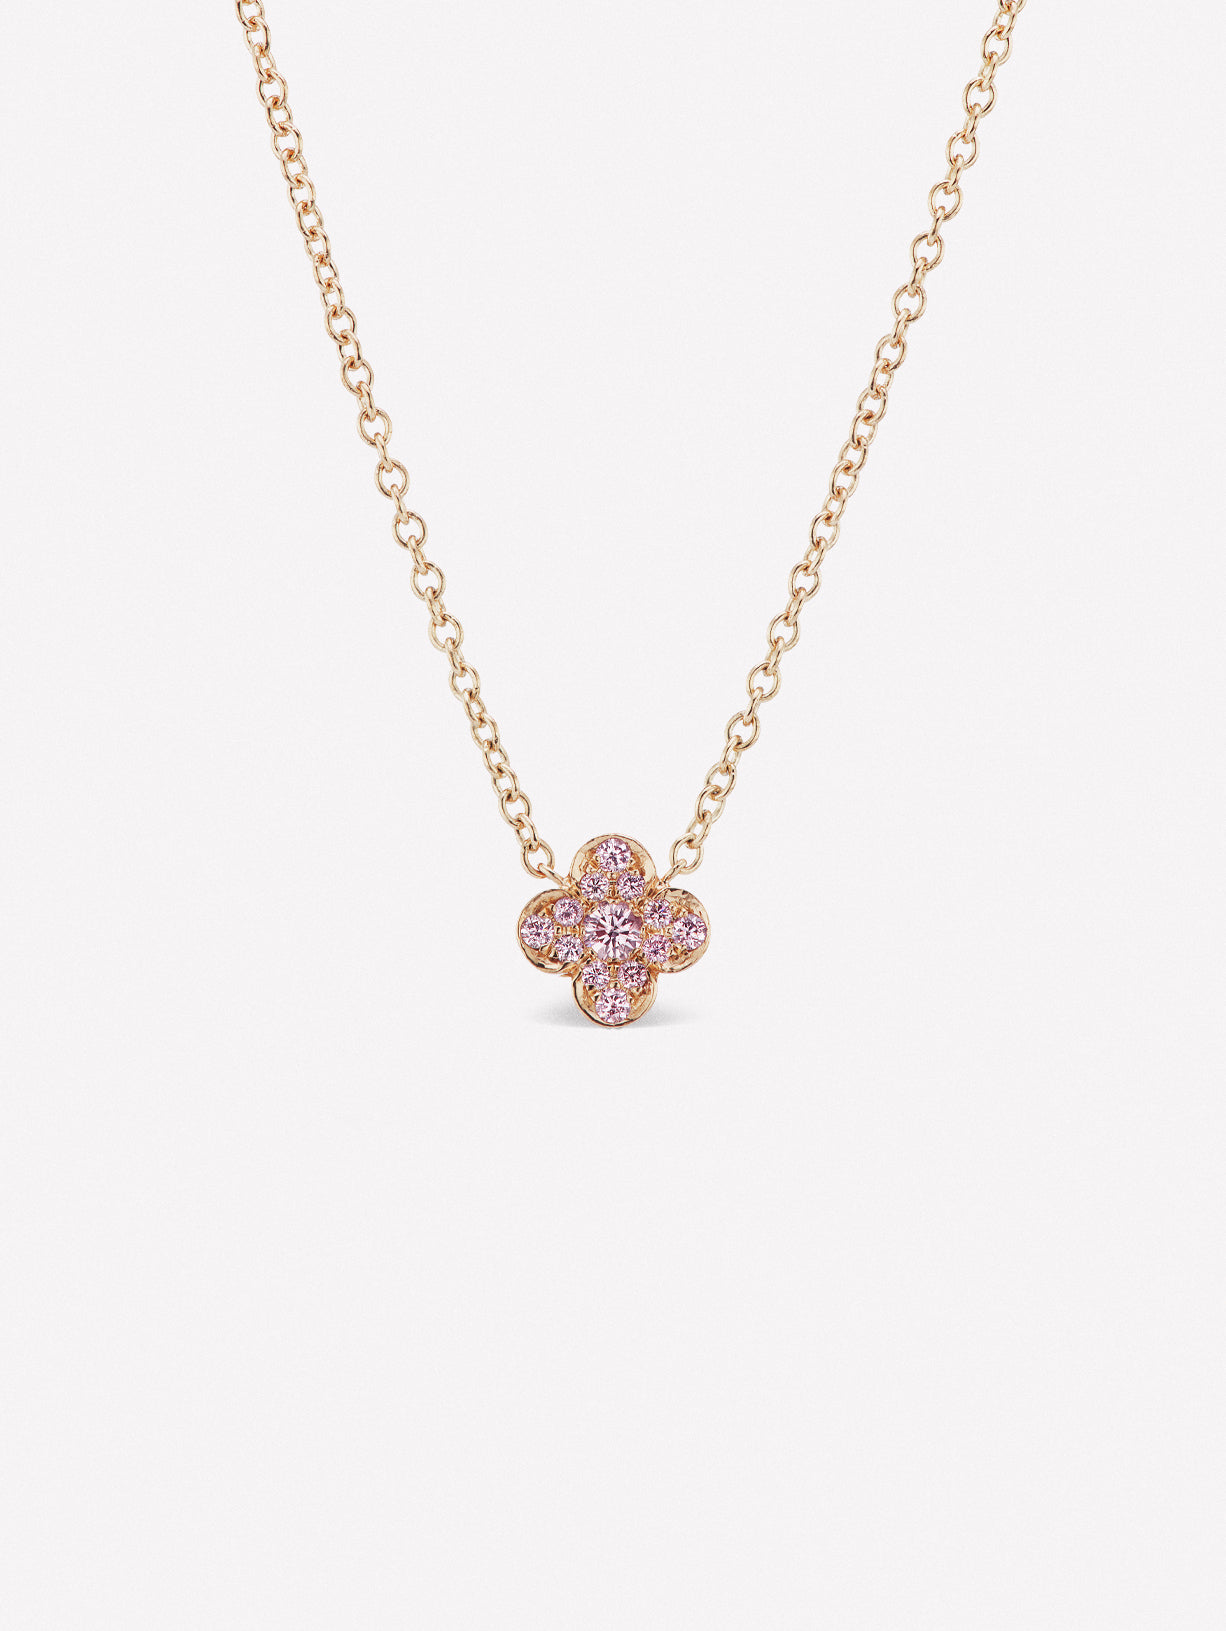 Argyle Pink Diamond Azalea Necklace by JFINE 